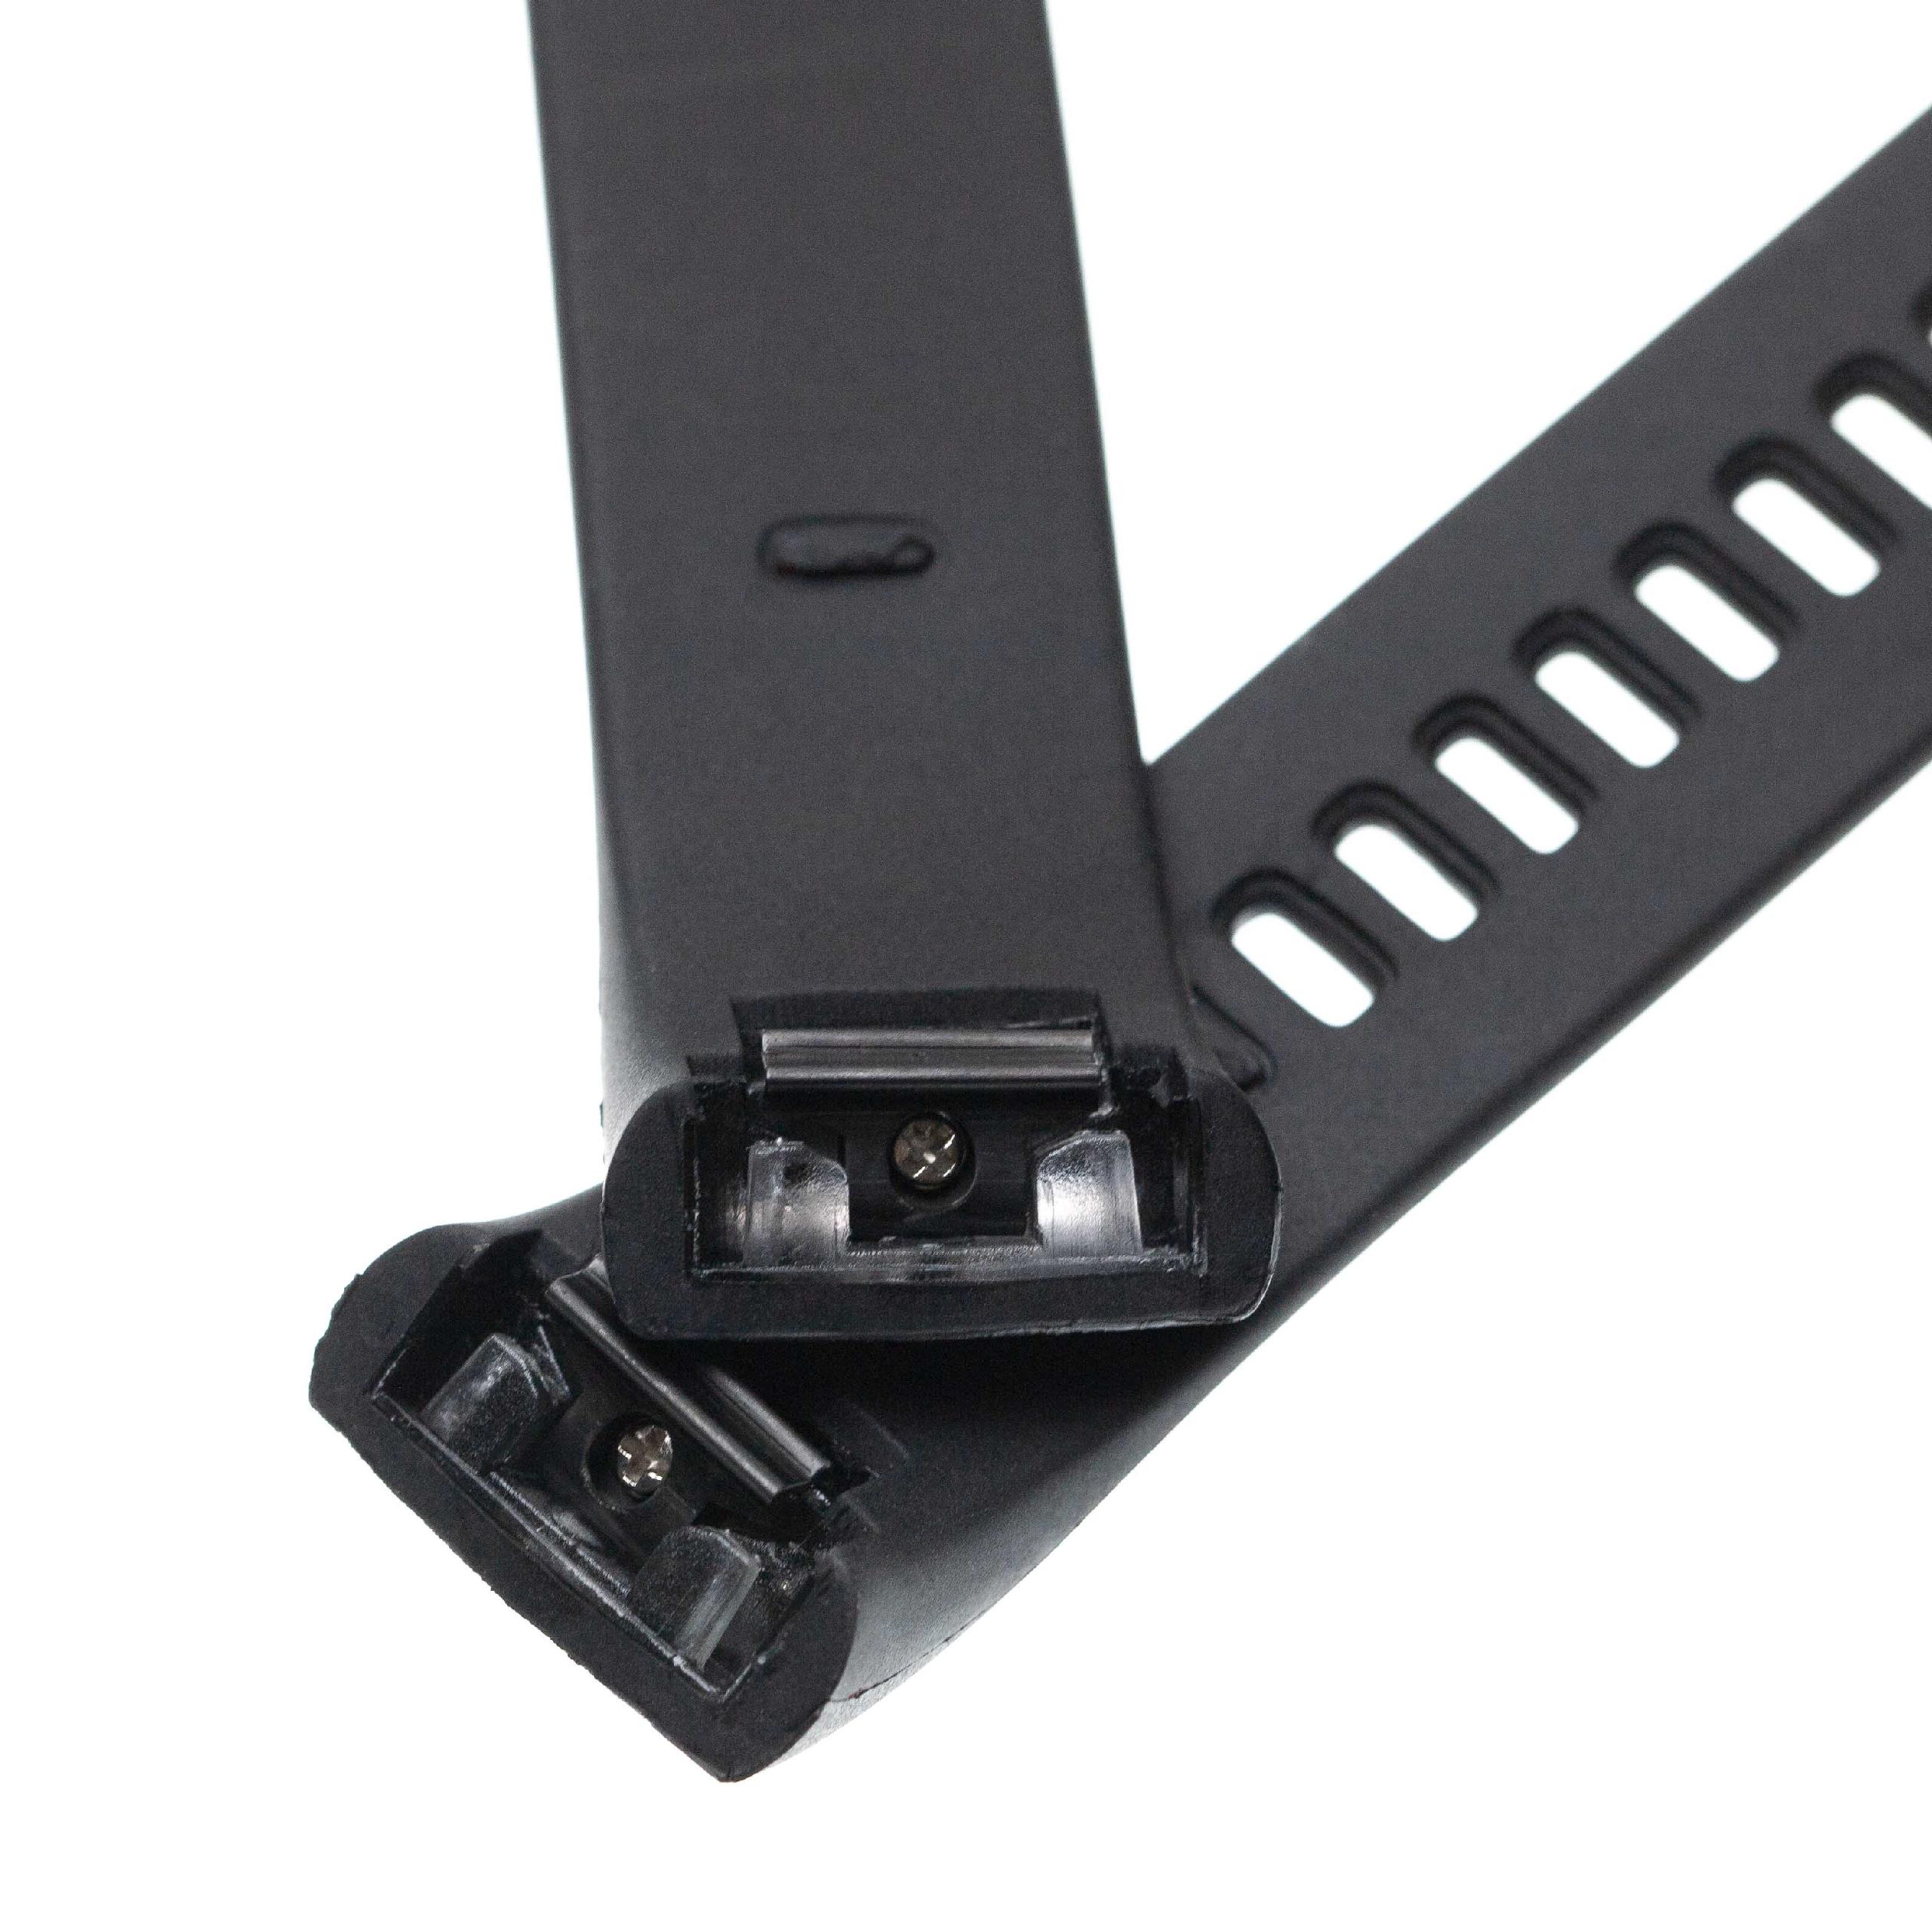 Armband für Xiaomi / Huami Amazfit Smartwatch - 10 + 8,2 cm lang, Silikon, schwarz